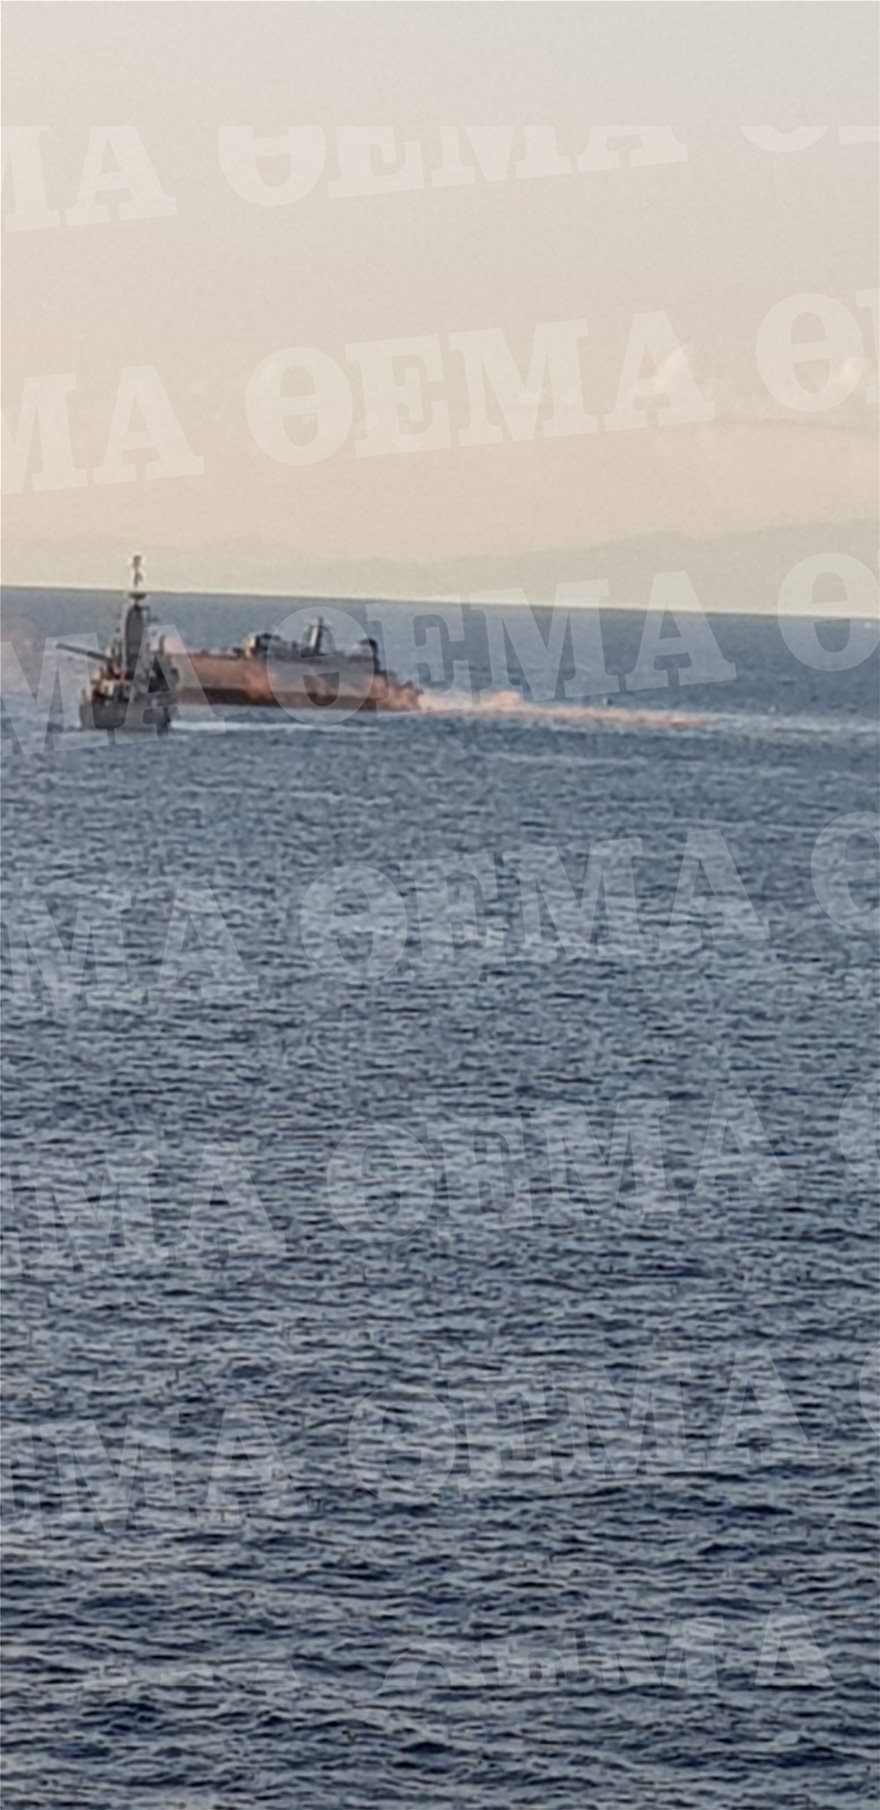 Φωτος: Βυθίζεται το «Καλλιστώ» του Πολεμικού Ναυτικού στον Πειραιά - Πλοίο του έκοψε την πρύμνη - Φωτογραφία 5